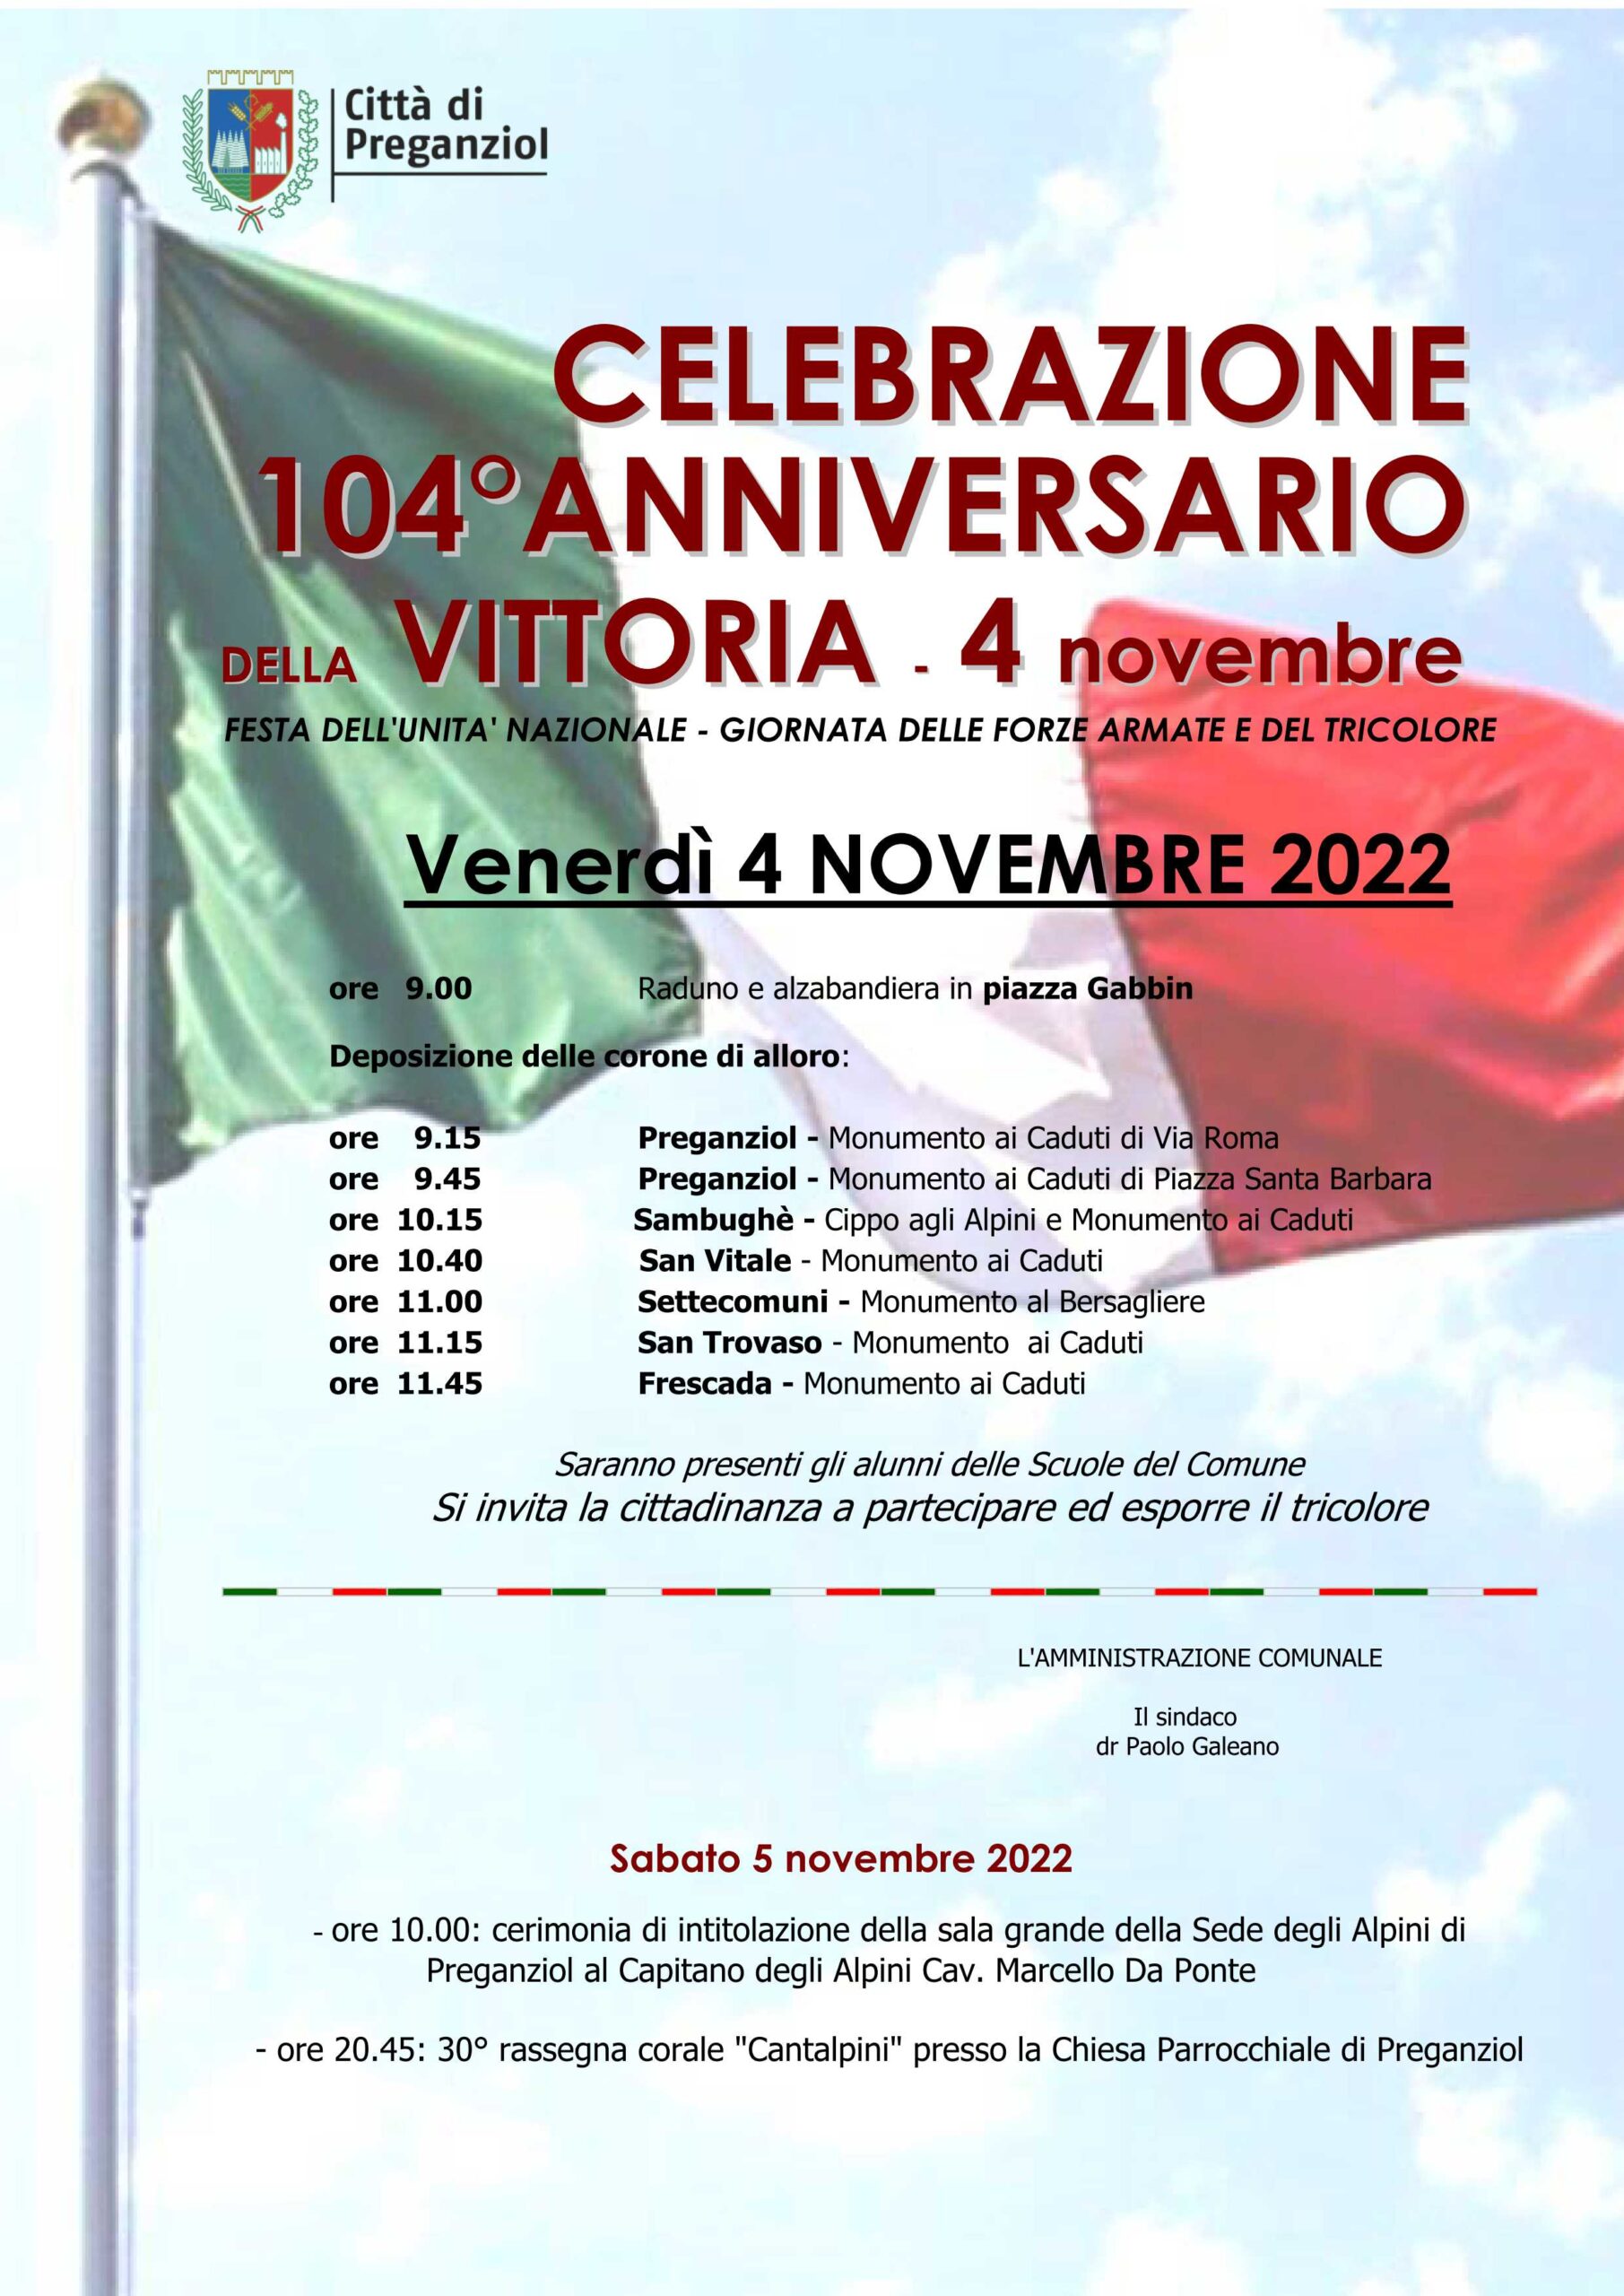 Venerdì 4 novembre 2022 – Celebrazione Anniversario della Vittoria